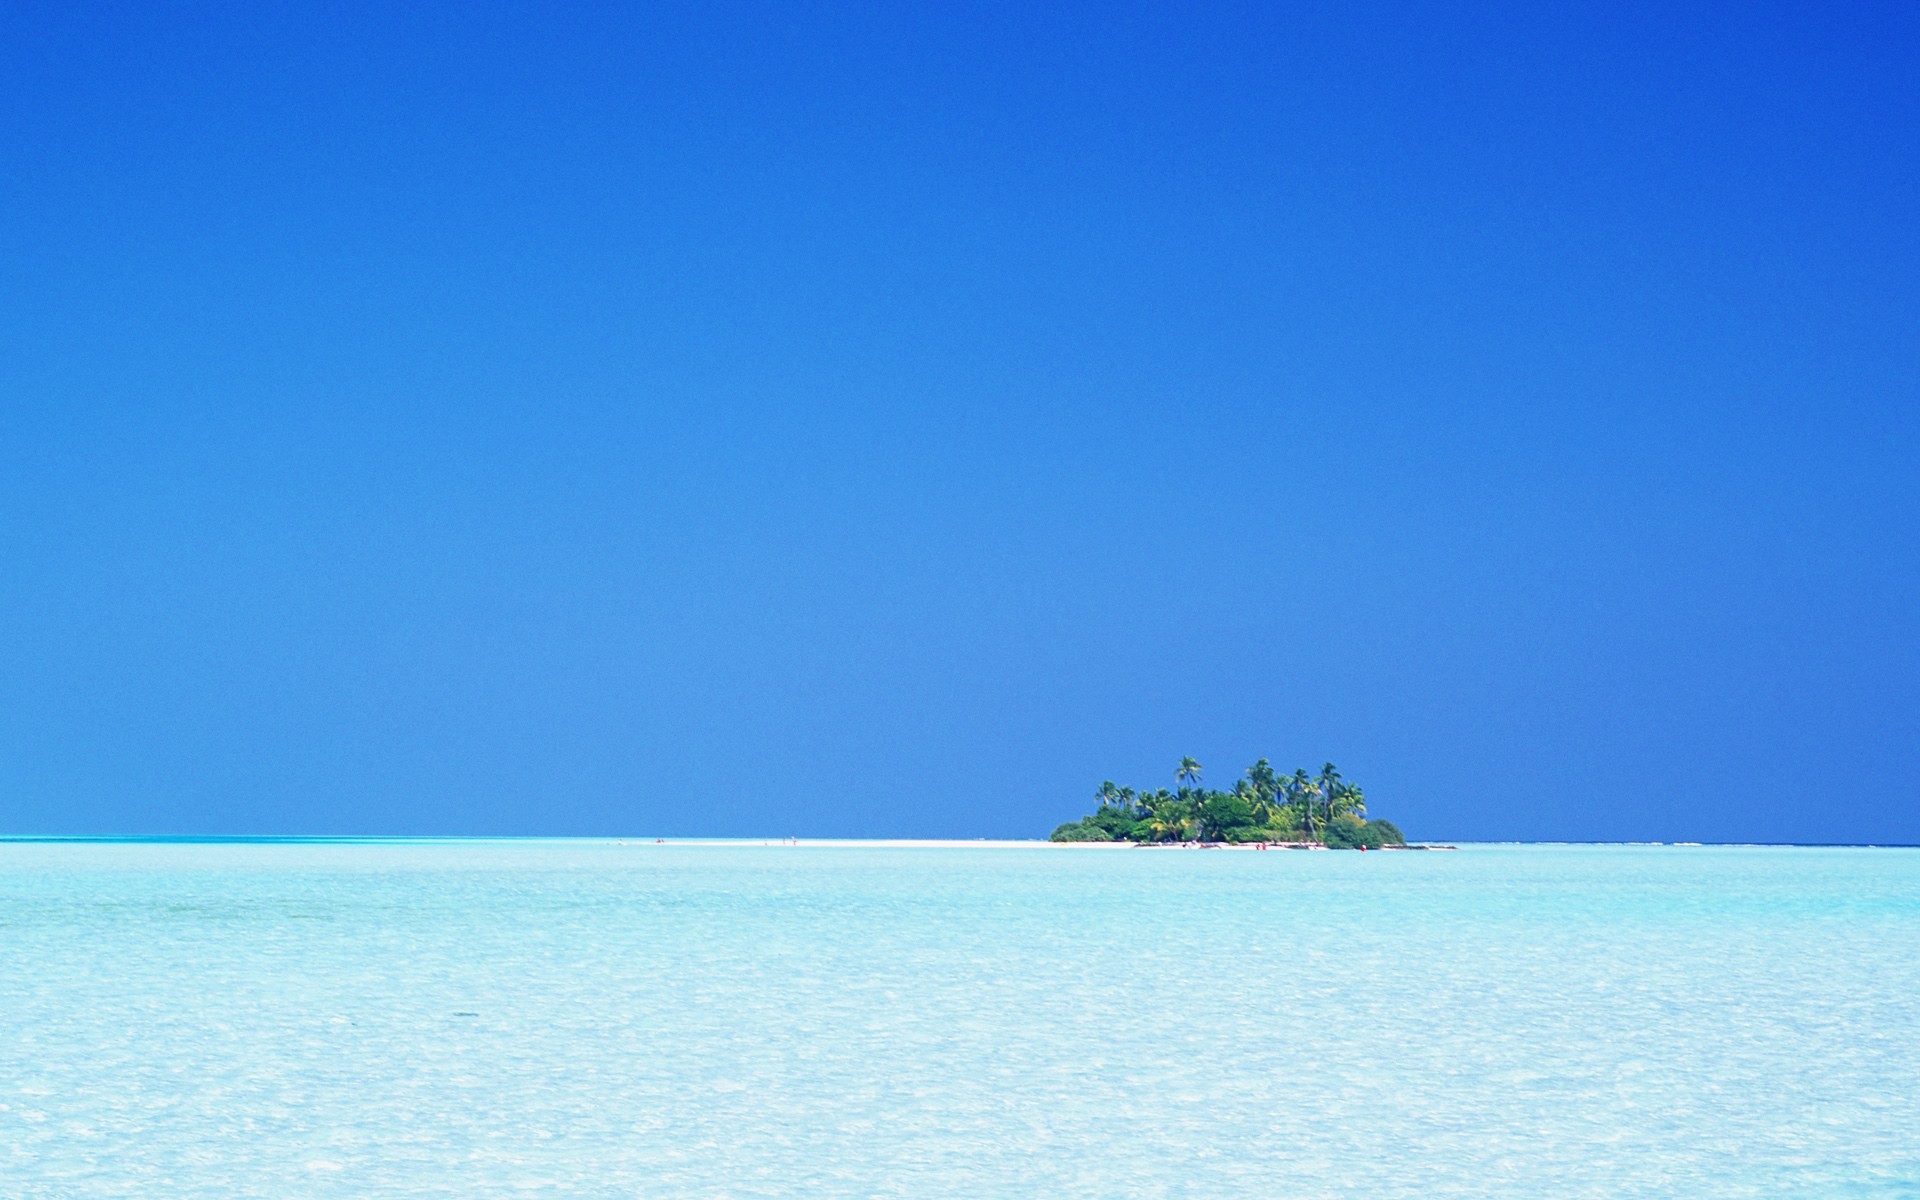 Maledivy vody a modrou oblohu #21 - 1920x1200